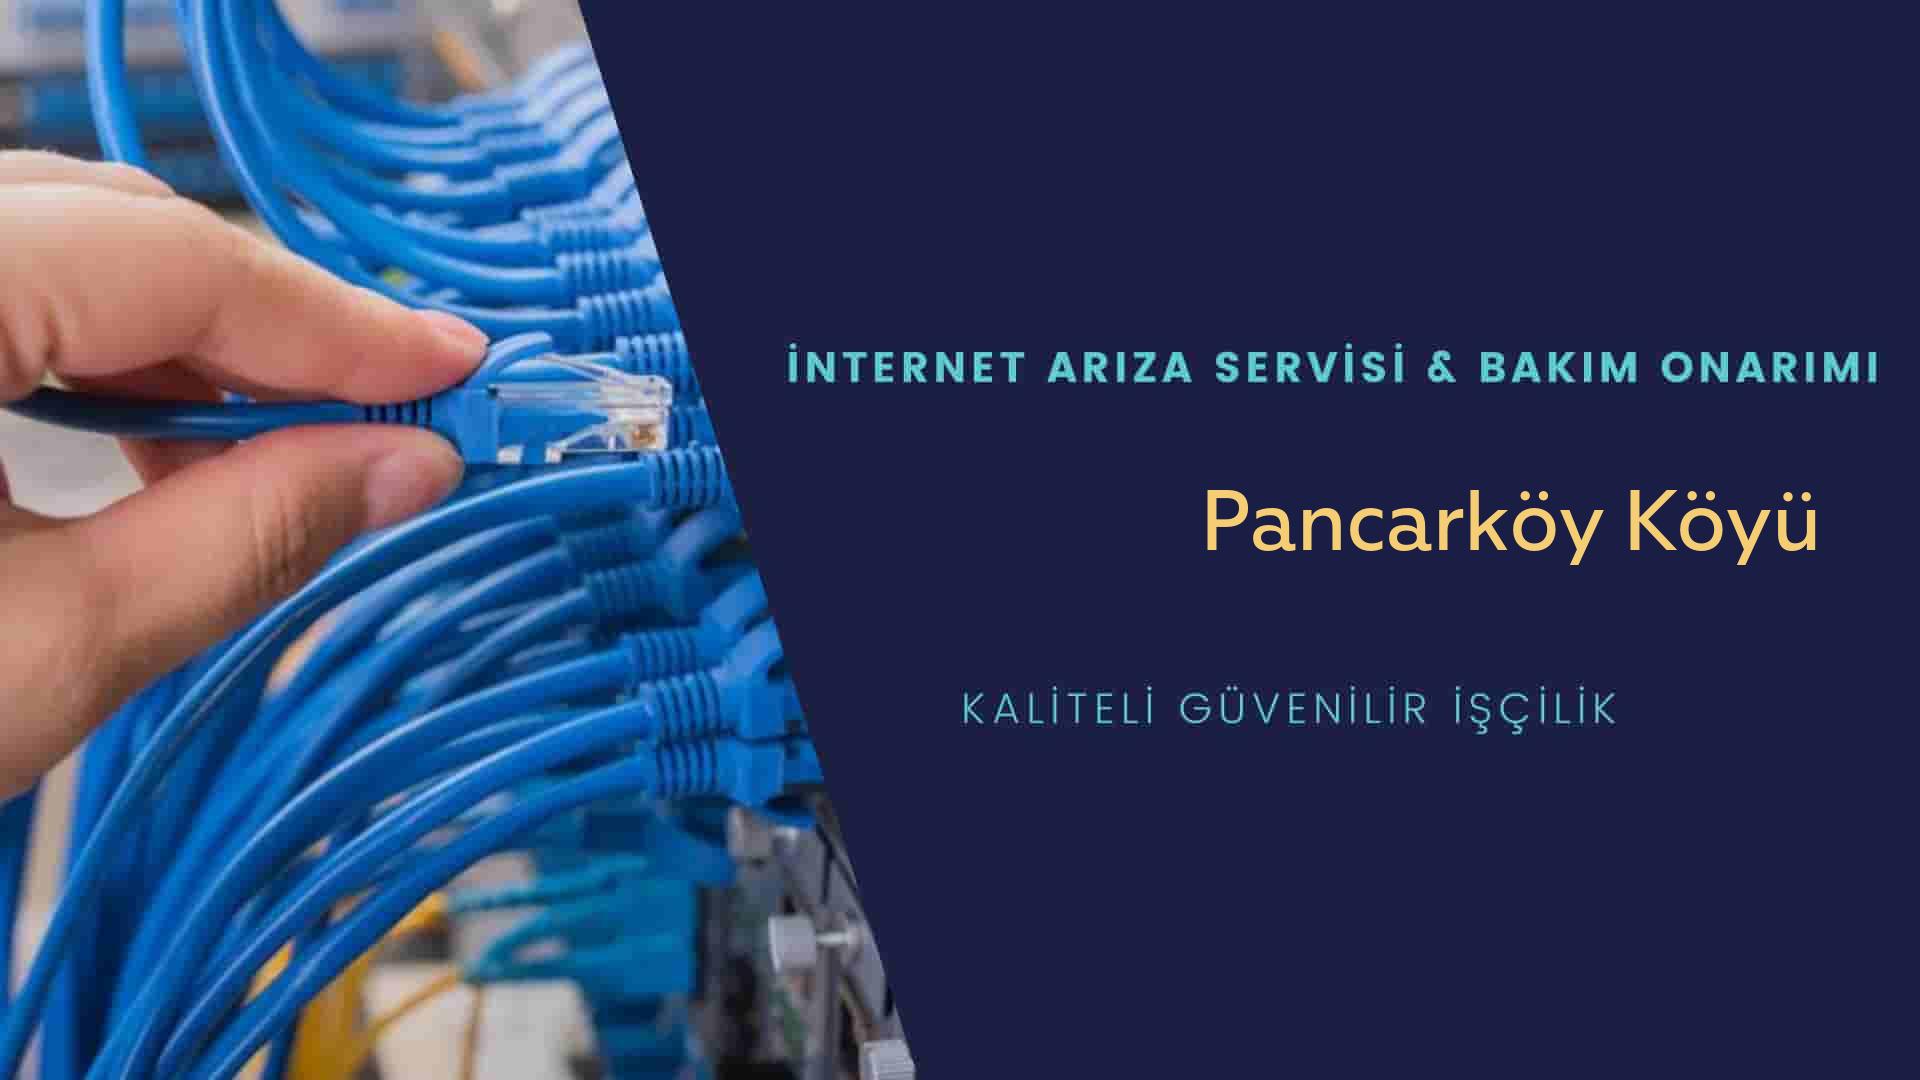 Pancarköy Köyü internet kablosu çekimi yapan yerler veya elektrikçiler mi? arıyorsunuz doğru yerdesiniz o zaman sizlere 7/24 yardımcı olacak profesyonel ustalarımız bir telefon kadar yakındır size.